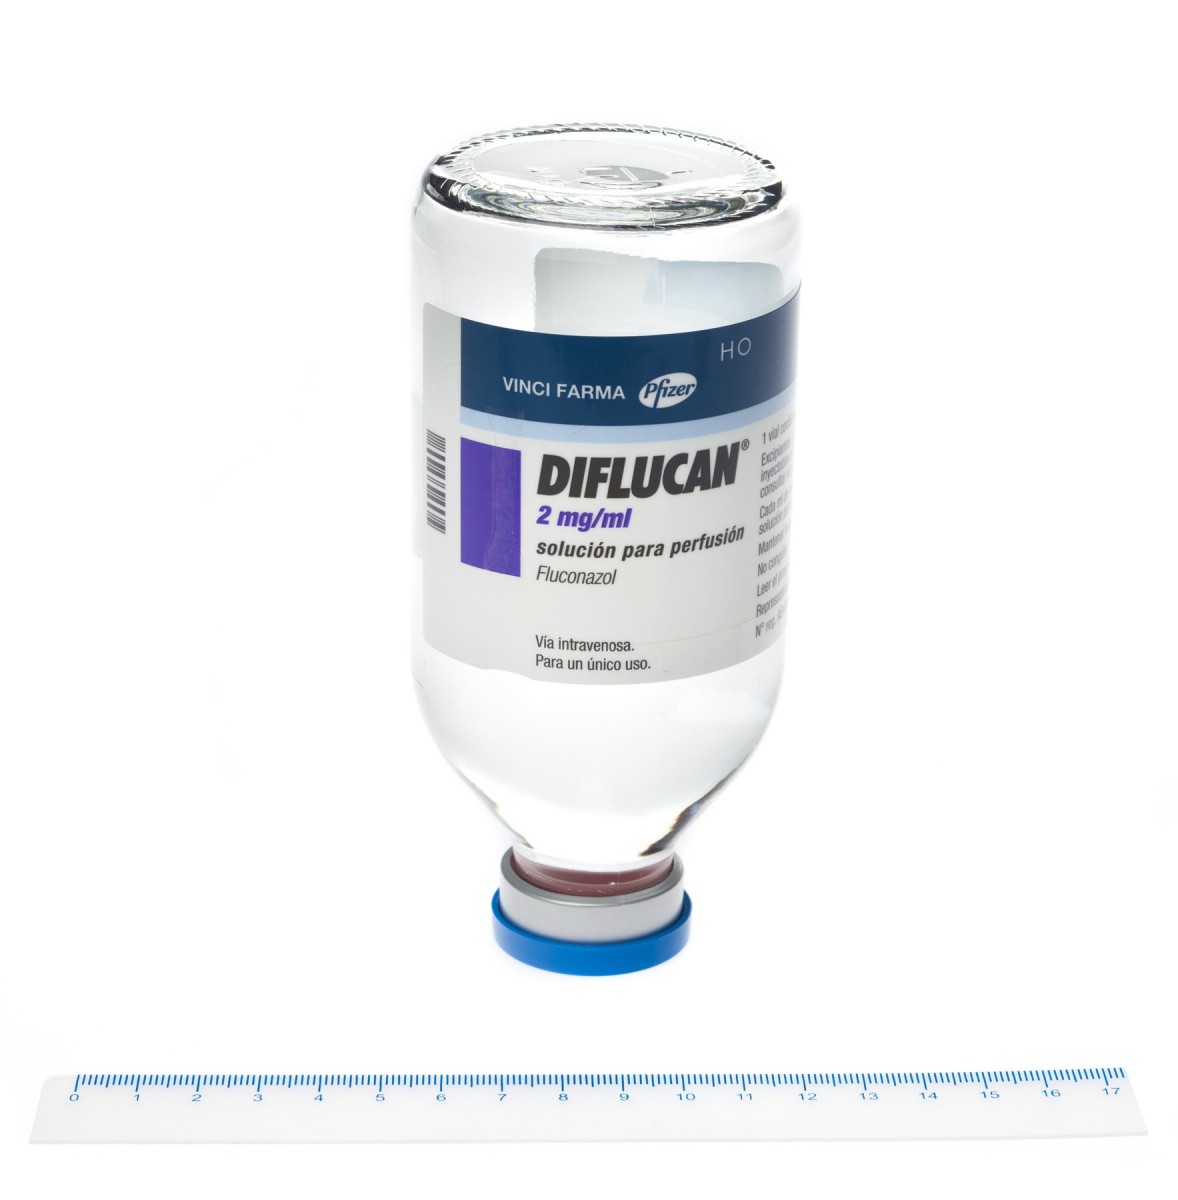 DIFLUCAN 2 mg/ml SOLUCION PARA PERFUSION , 50 viales de 100 ml fotografía de la forma farmacéutica.